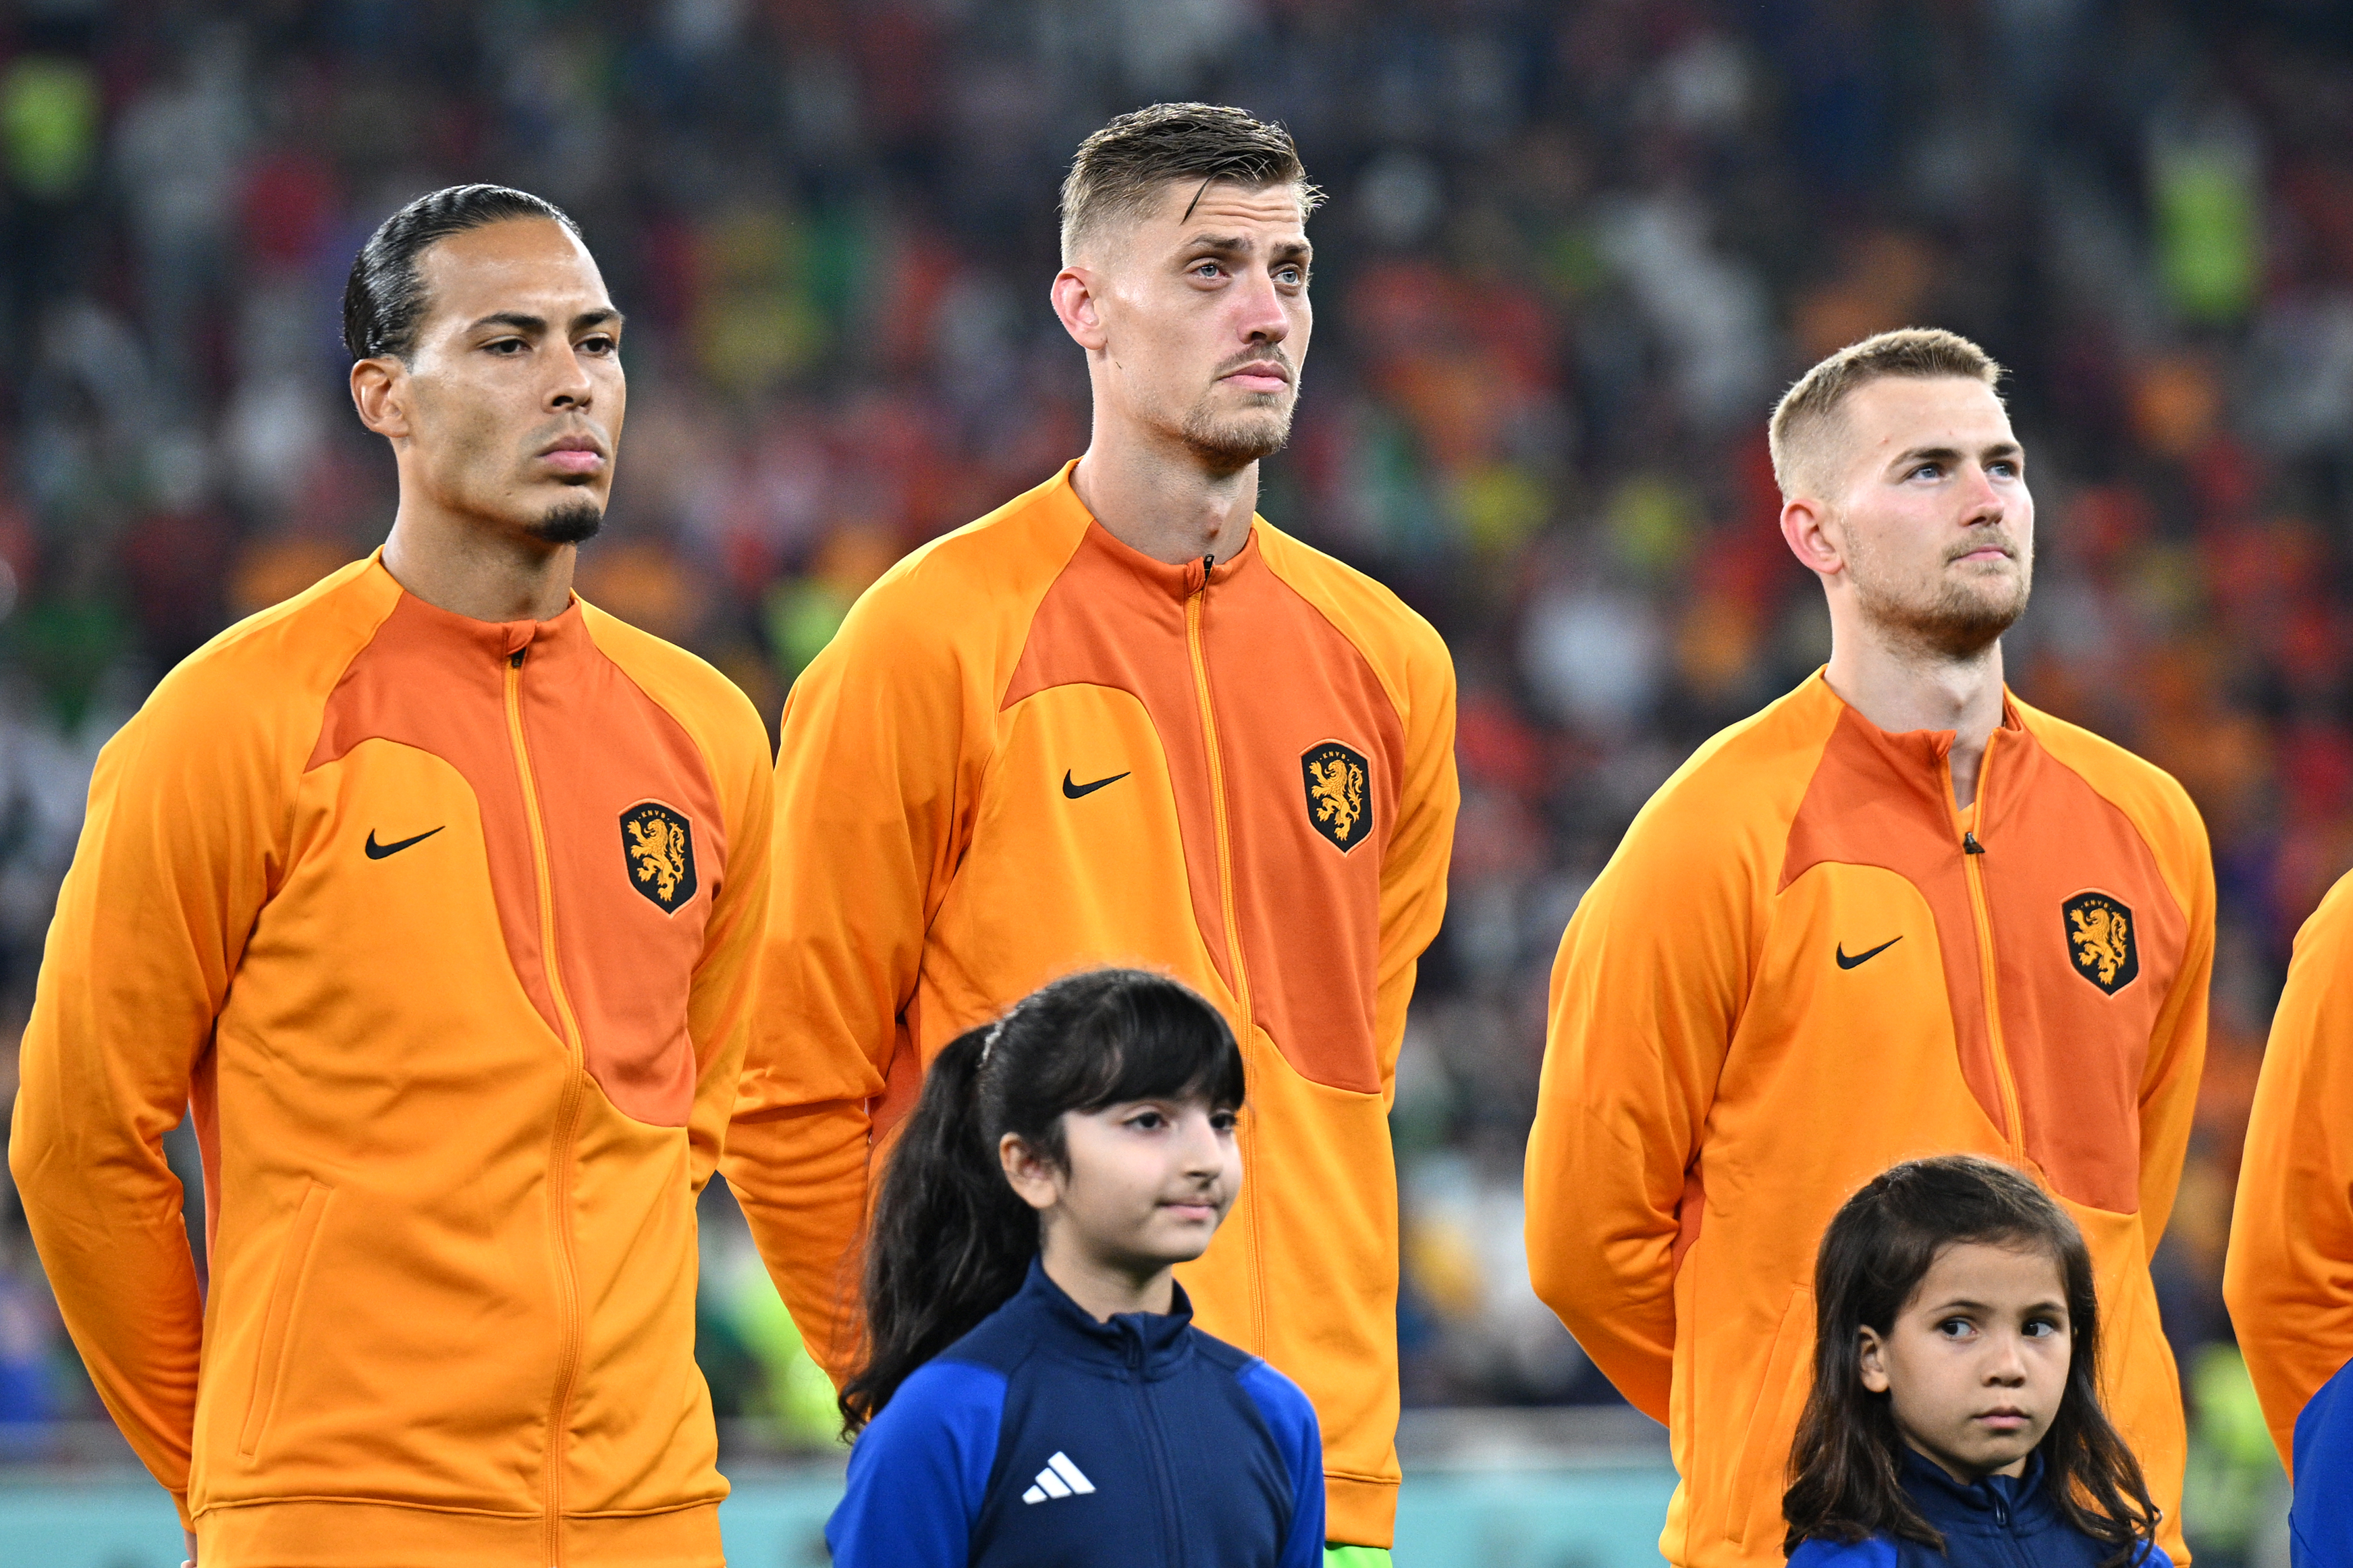 Olanda - Ecuador, LIVE TEXT, 18:00, la Cupa Mondială. ”Portocala mecanică”, neînvinsă în meciurile directe